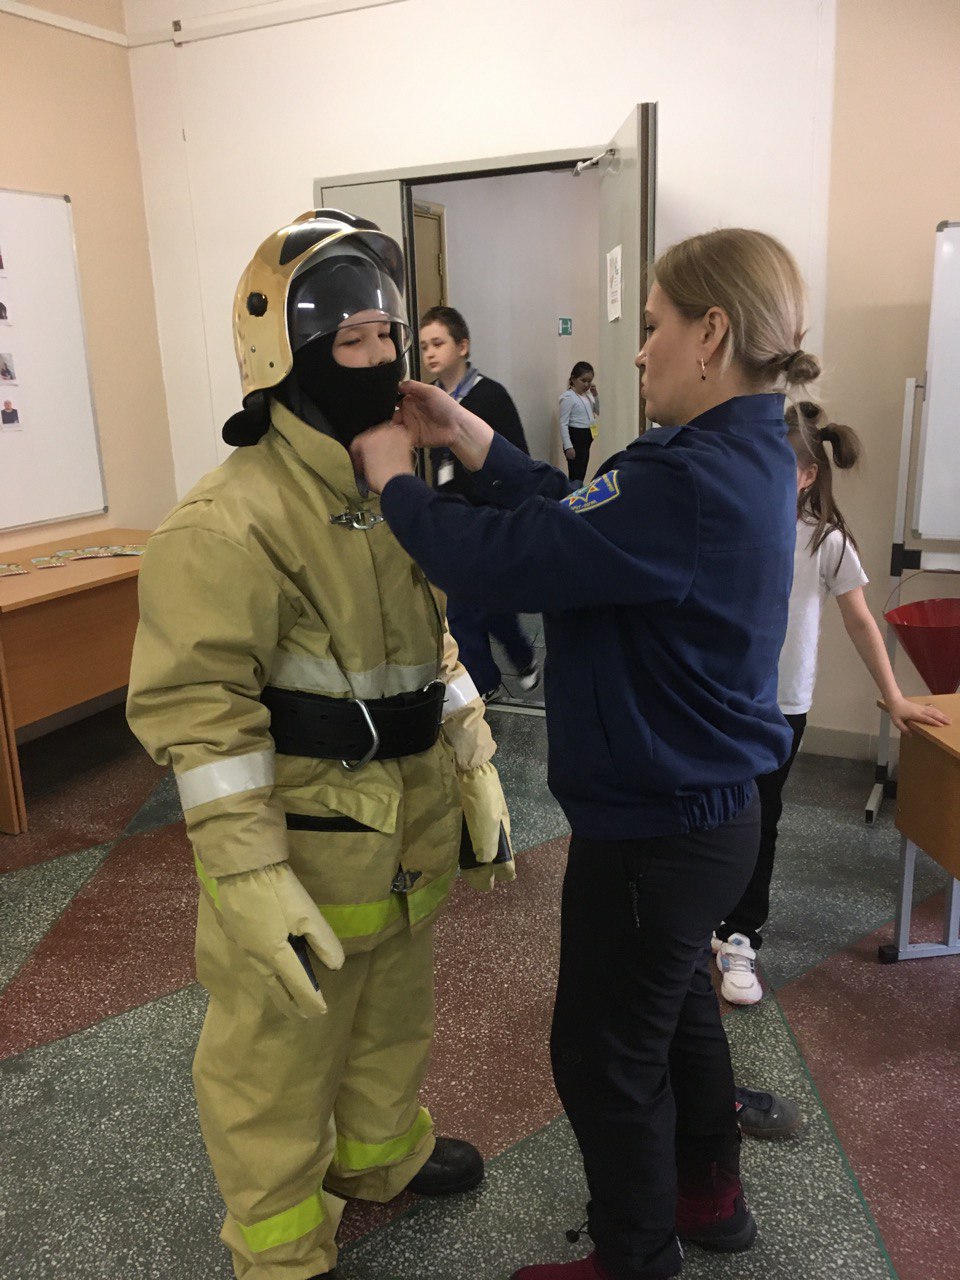 Выставка, посвященная 375-летию пожарной охраны России.